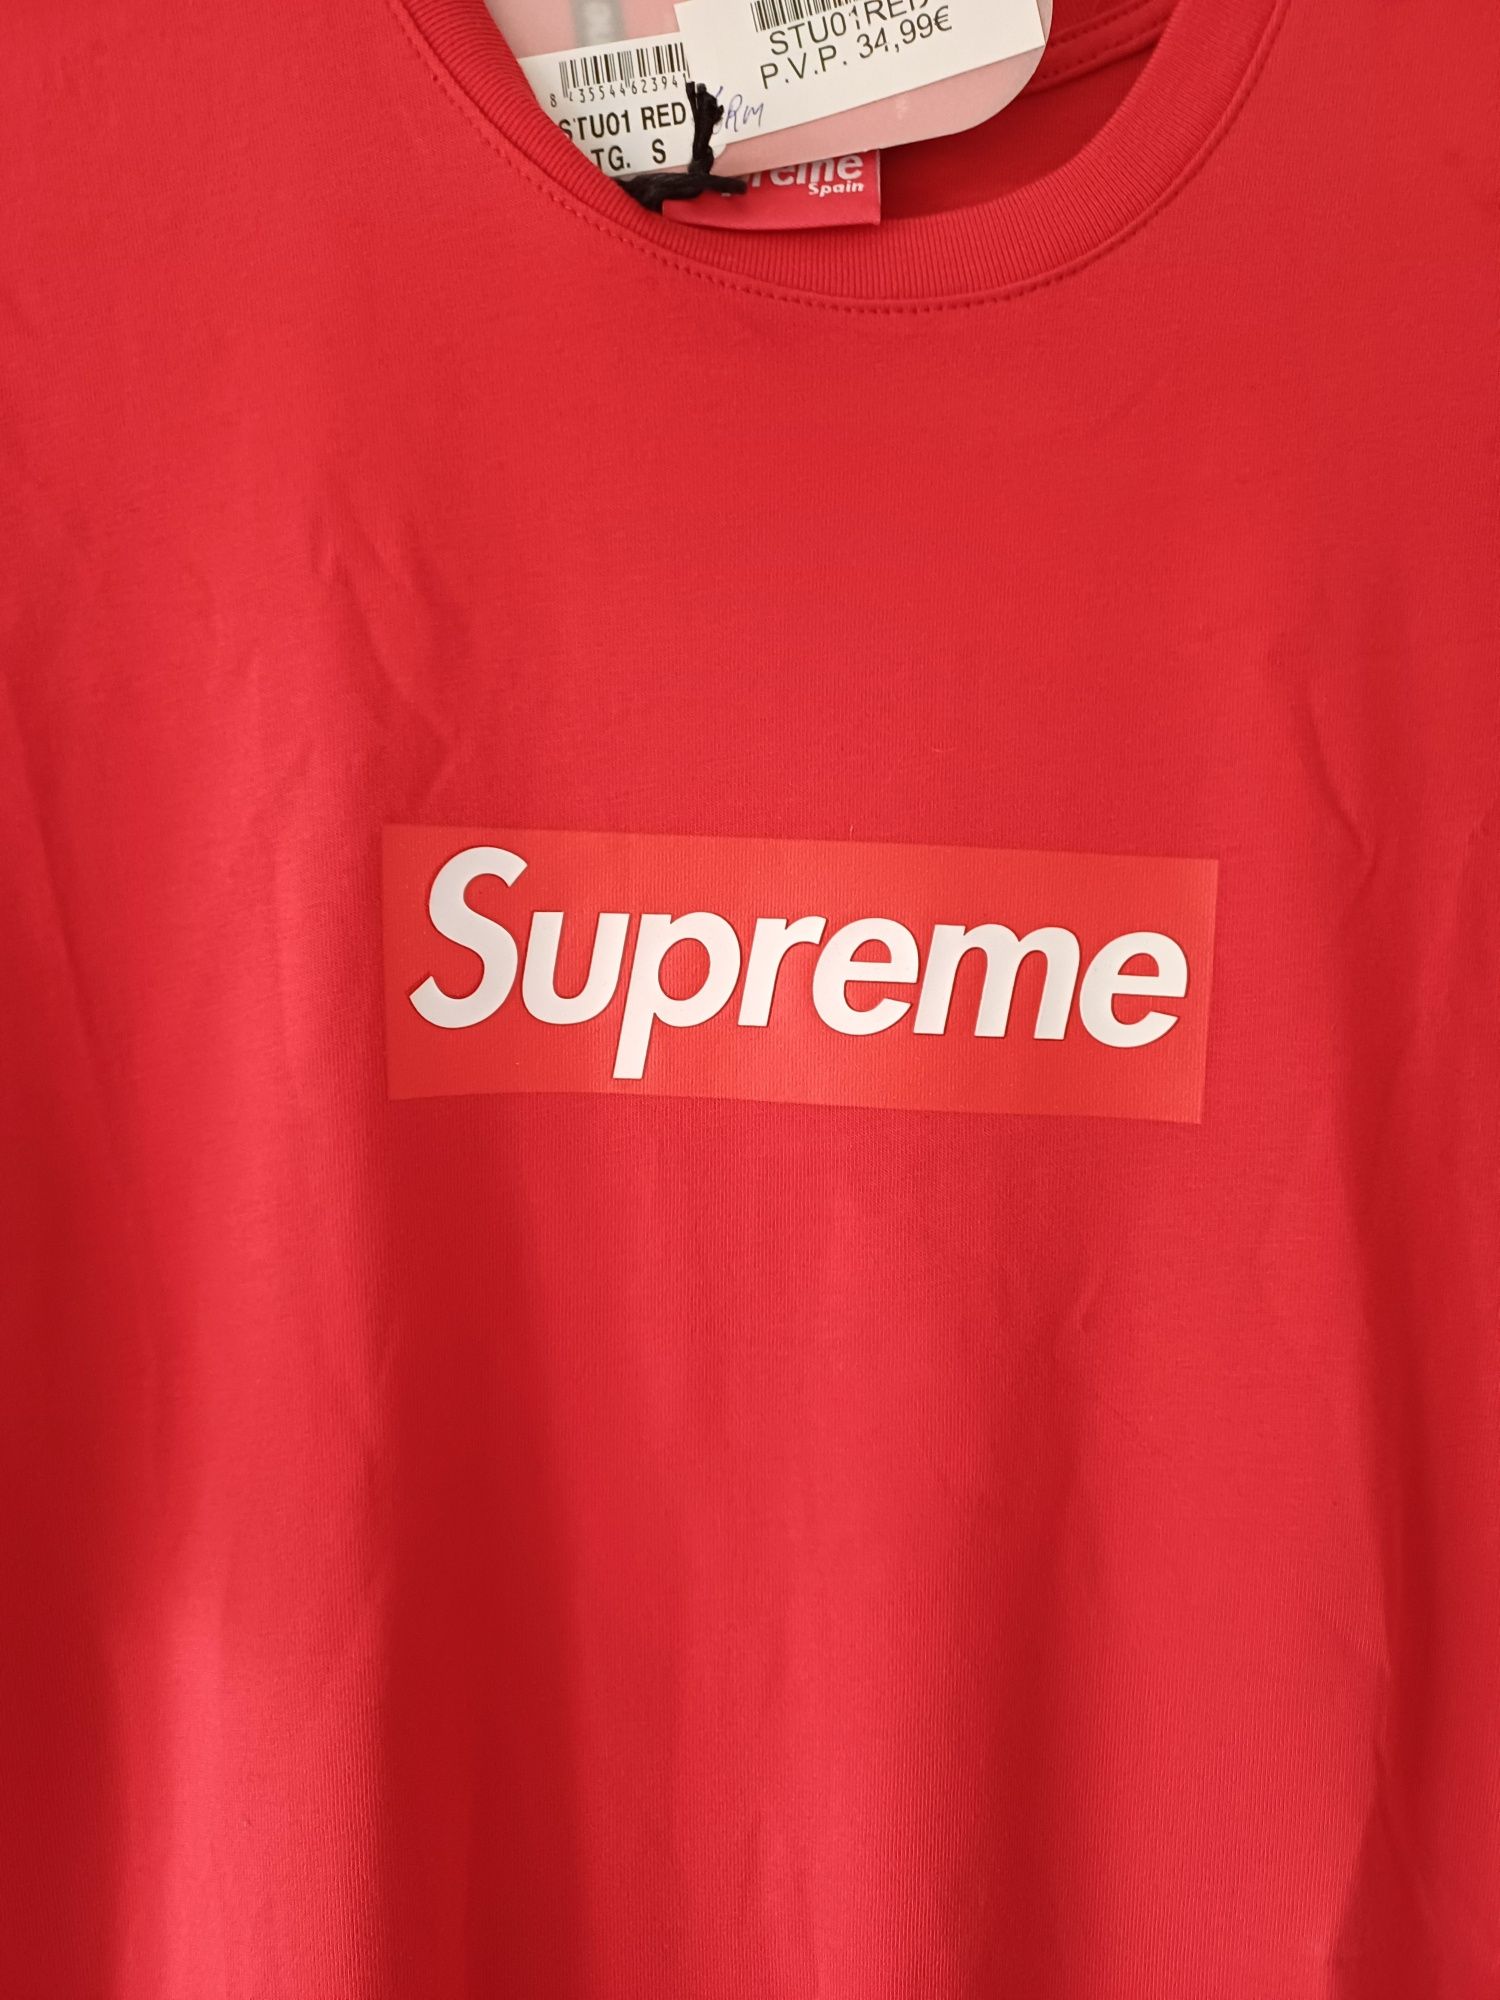 T-shirt da marca Supreme nova.